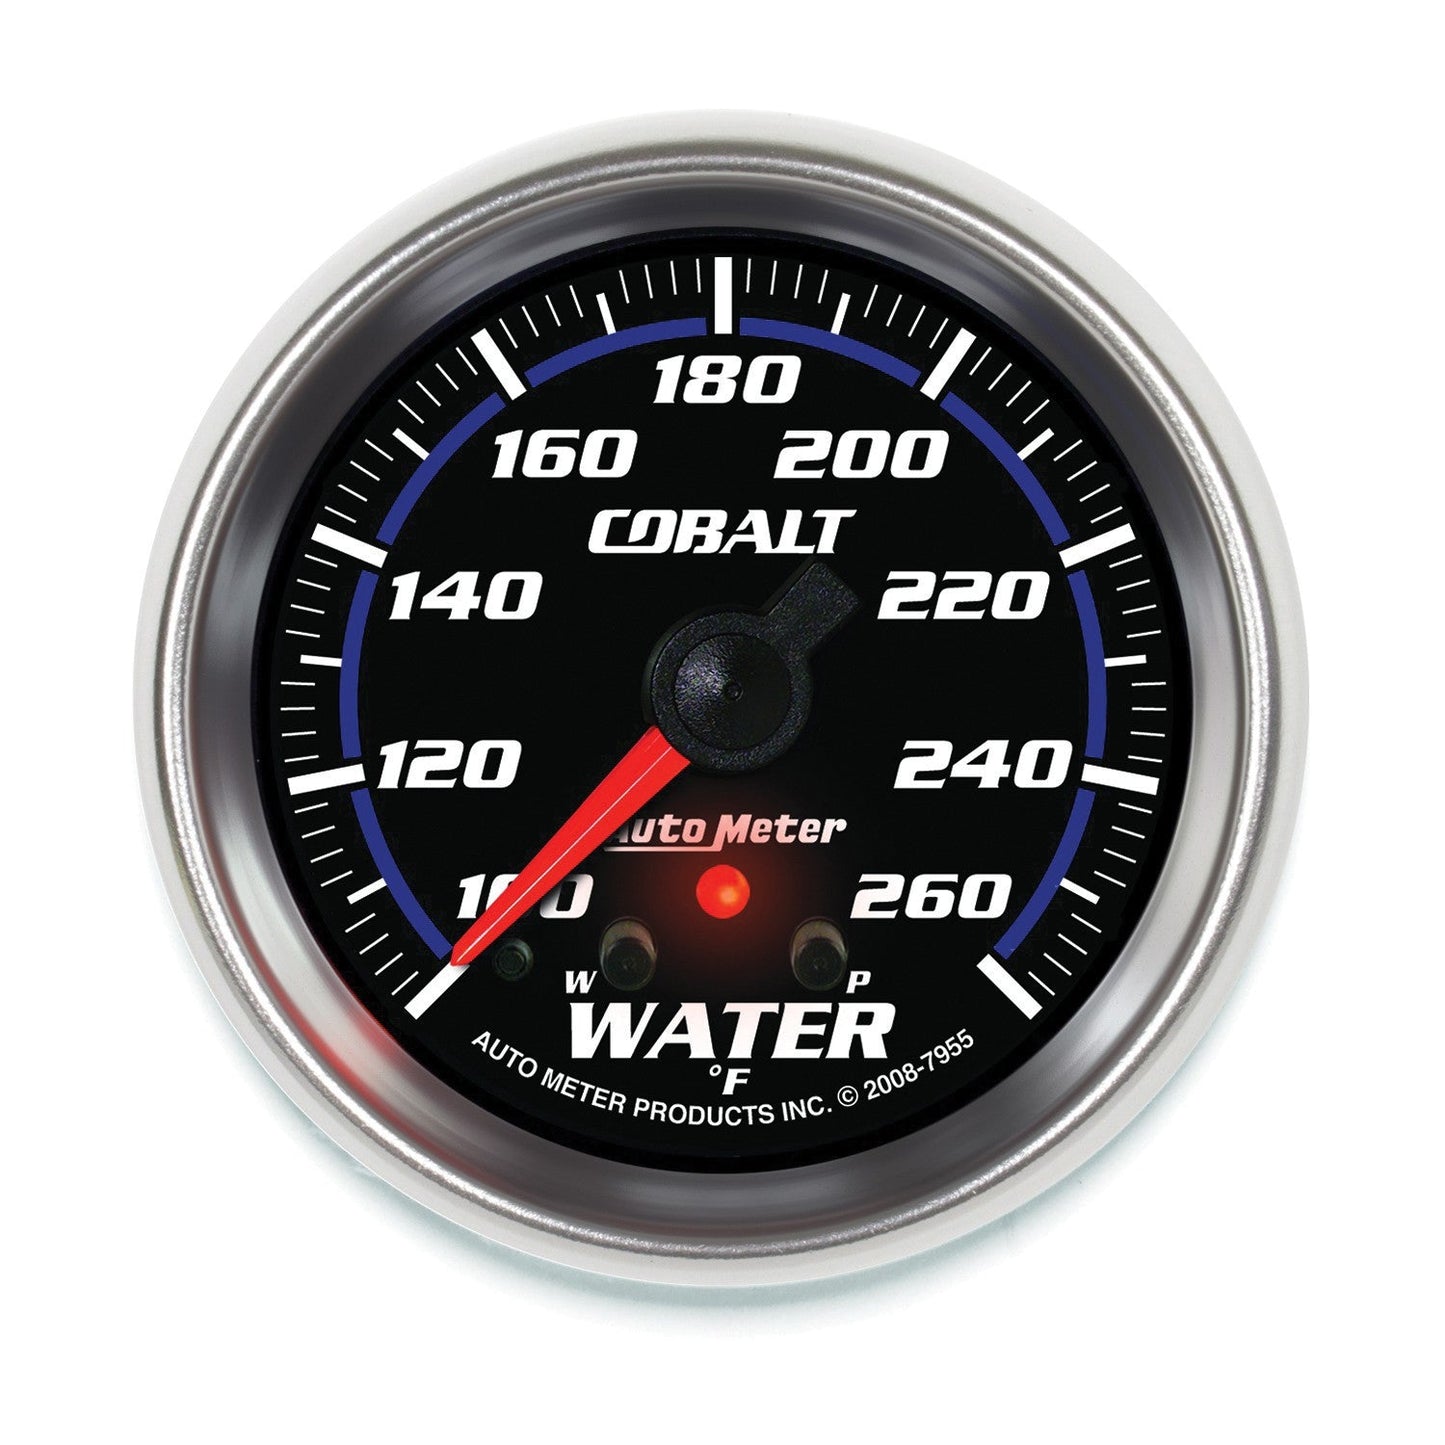 AutoMeter - 2-5/8" TEMPERATURA DA ÁGUA, COM PICO E AVISO, 100-260 °F, MOTOR DE PASSO, COBALT (7955) 